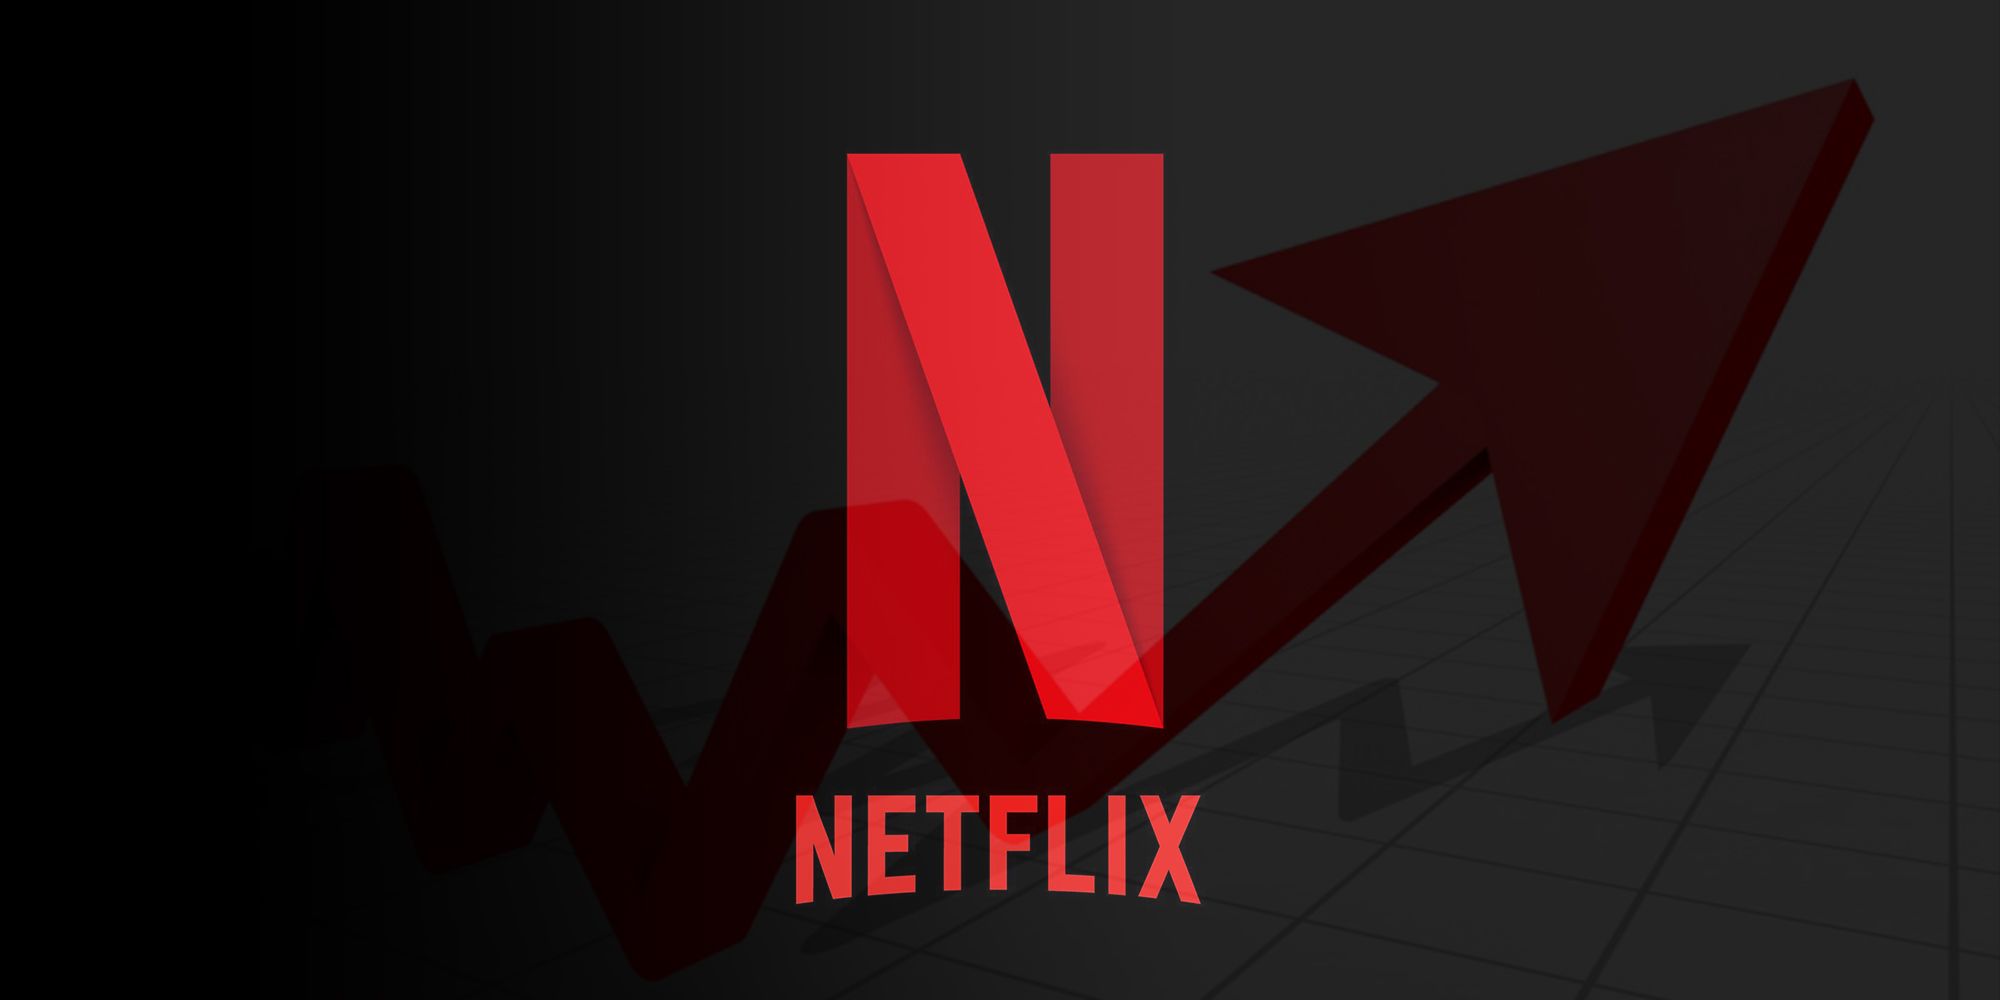 Netflix Stock Price